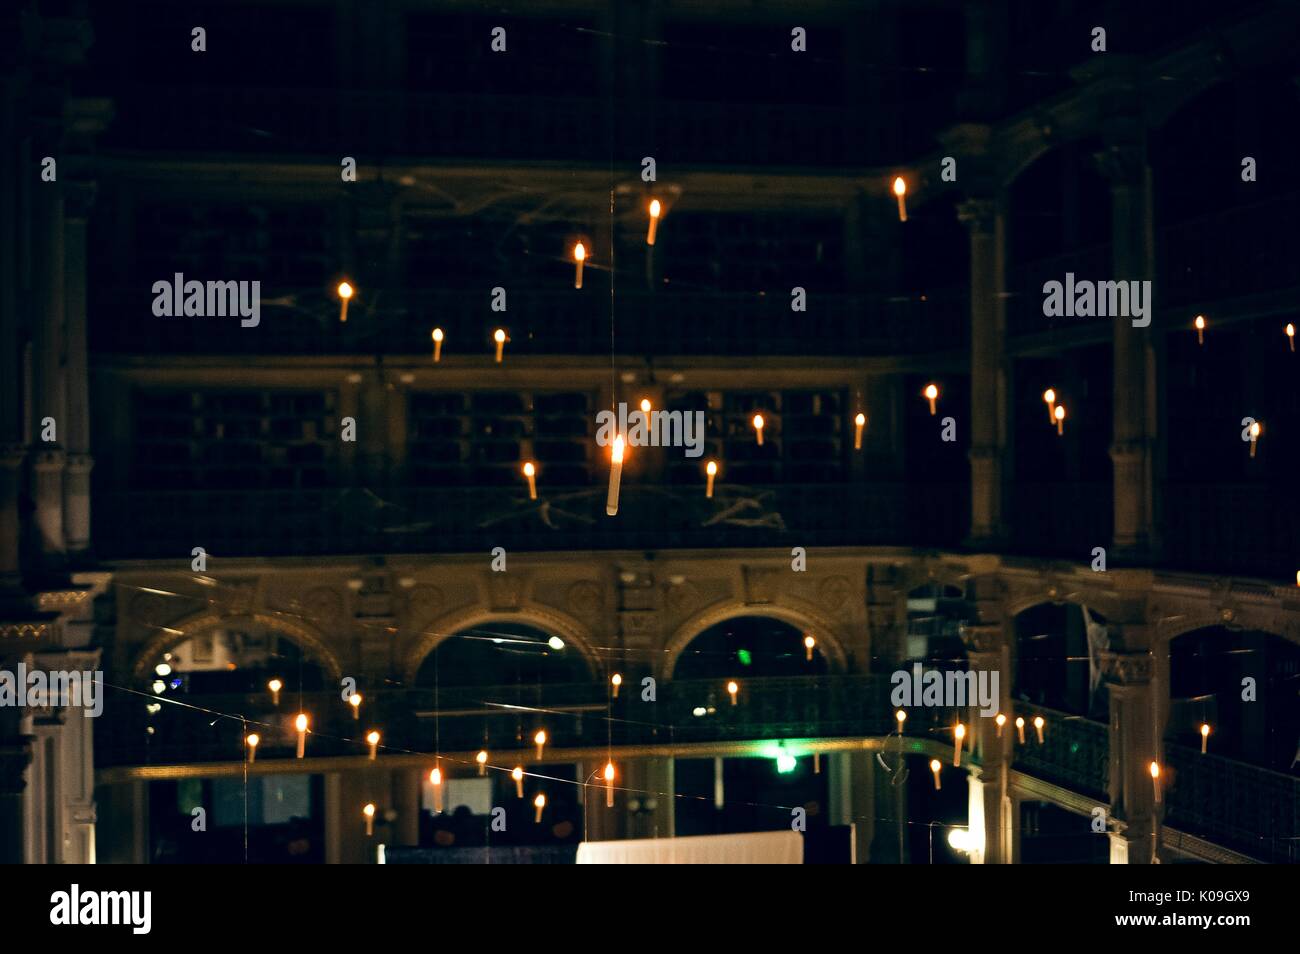 Ansicht aus einer oberen Ebene der George Peabody Library, der hängenden Kerzen, fast alle der Bibliothek Lichter ausgeschaltet sind, 2015. Mit freundlicher Genehmigung von Eric Chen. Stockfoto